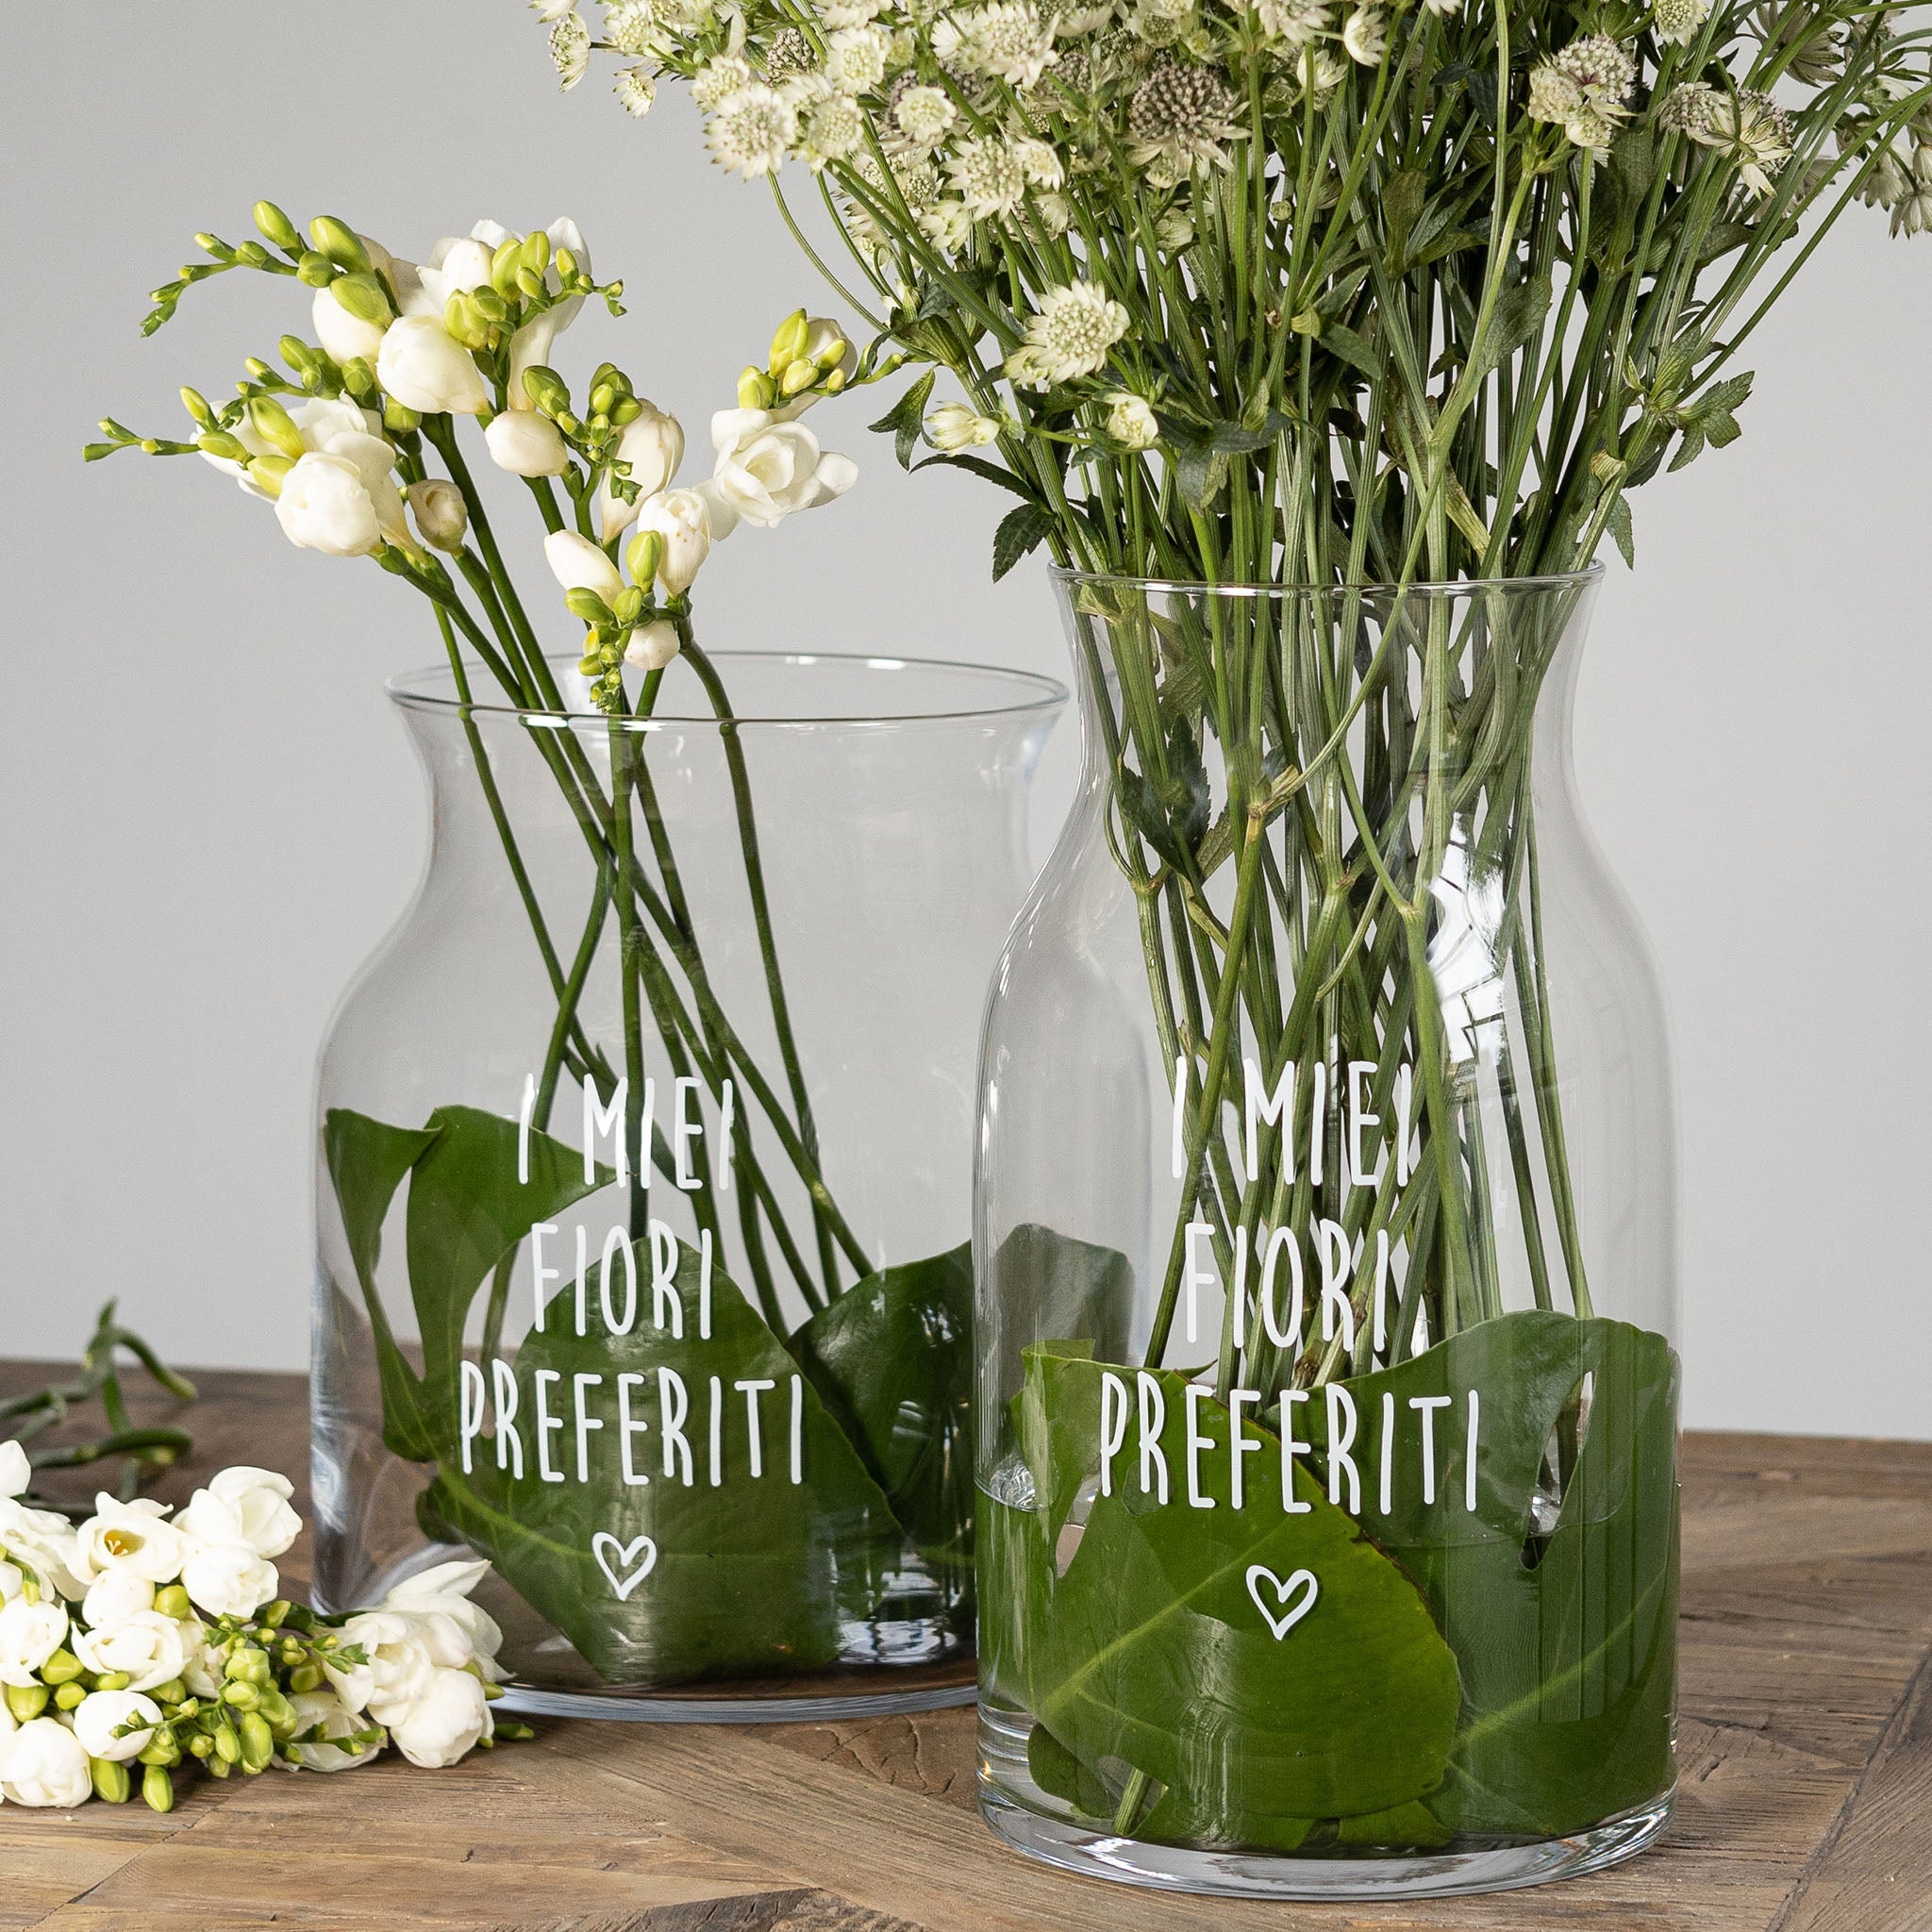 Vase Portofiori Decorate my favorite flowers